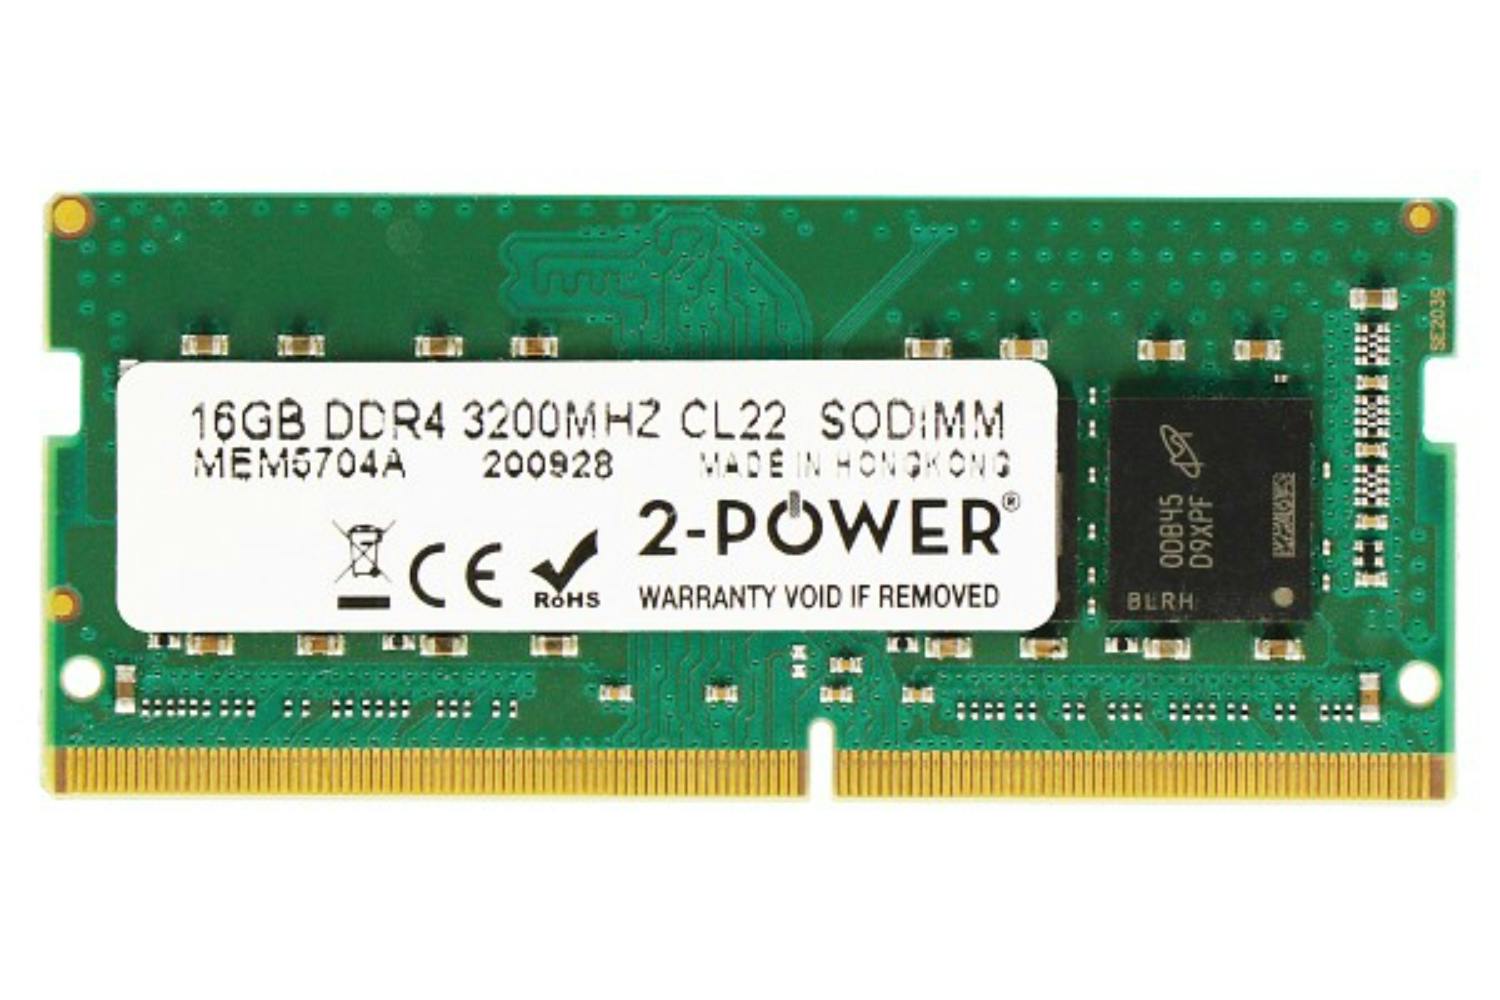 2-Power 16GB DDR4 3200MHz CL22 SODIMM Memory Module